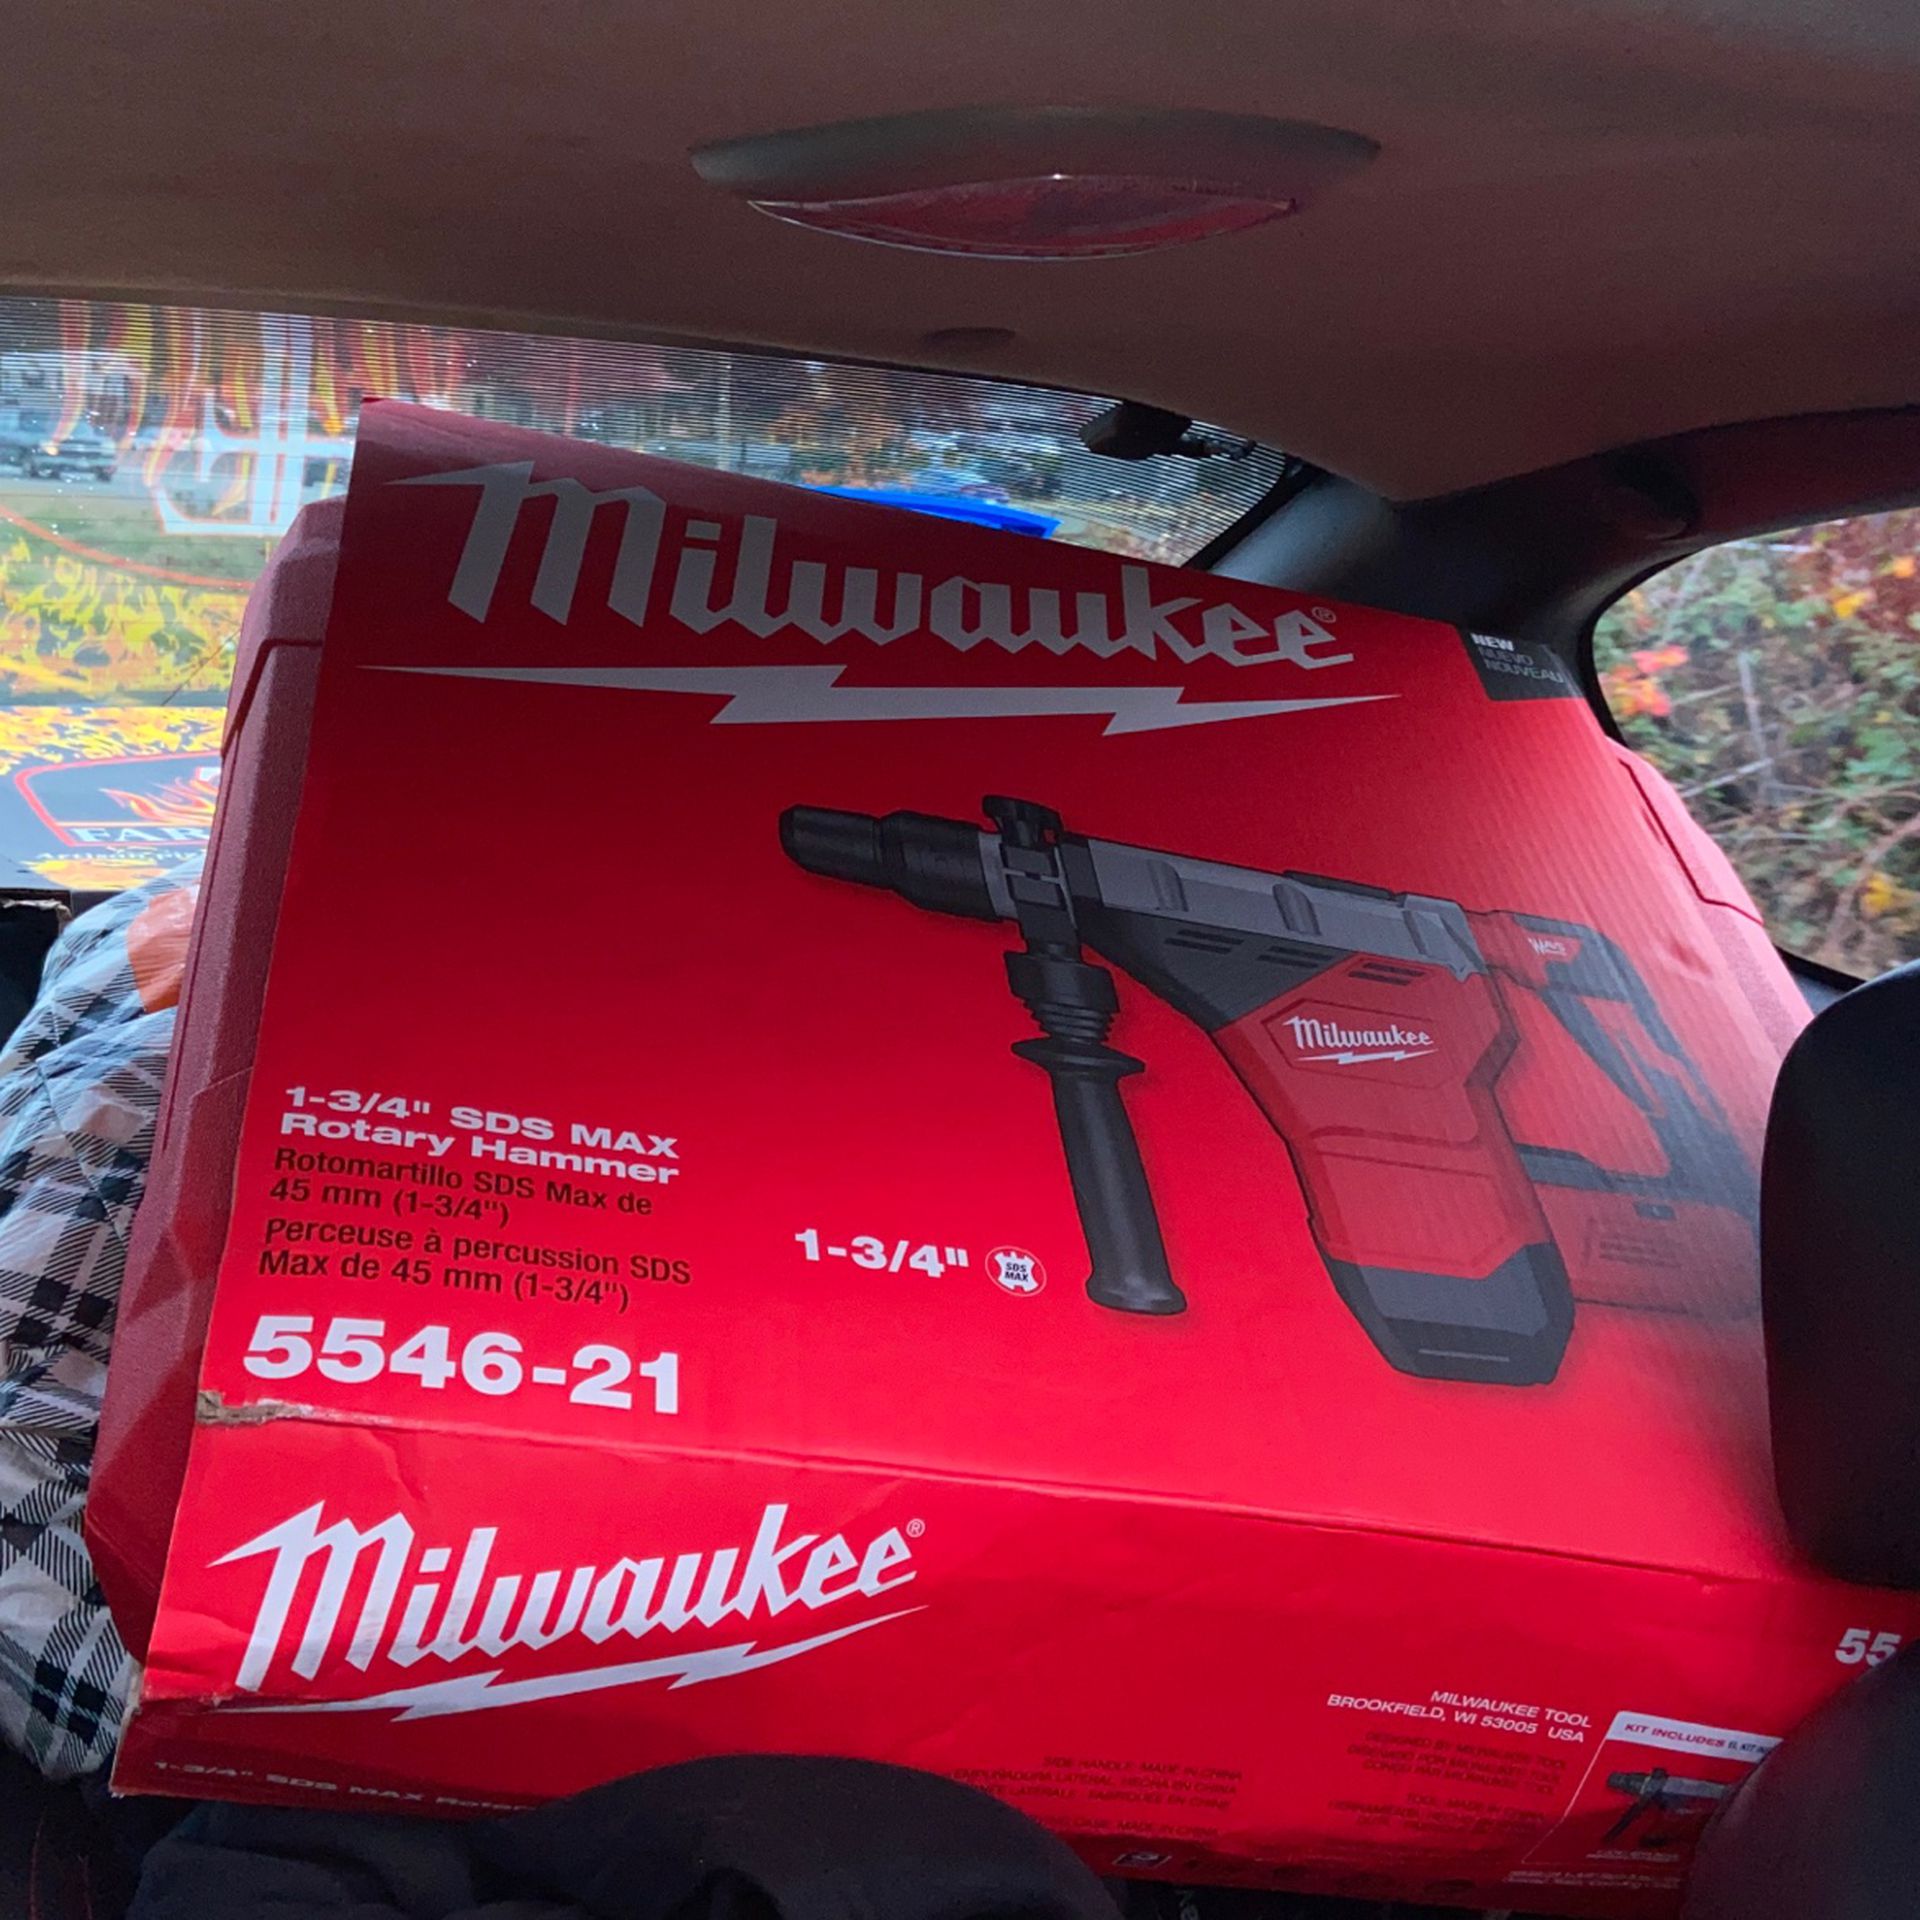 Milwaukee 1-3/4” SDS MAX Rotary Hammer